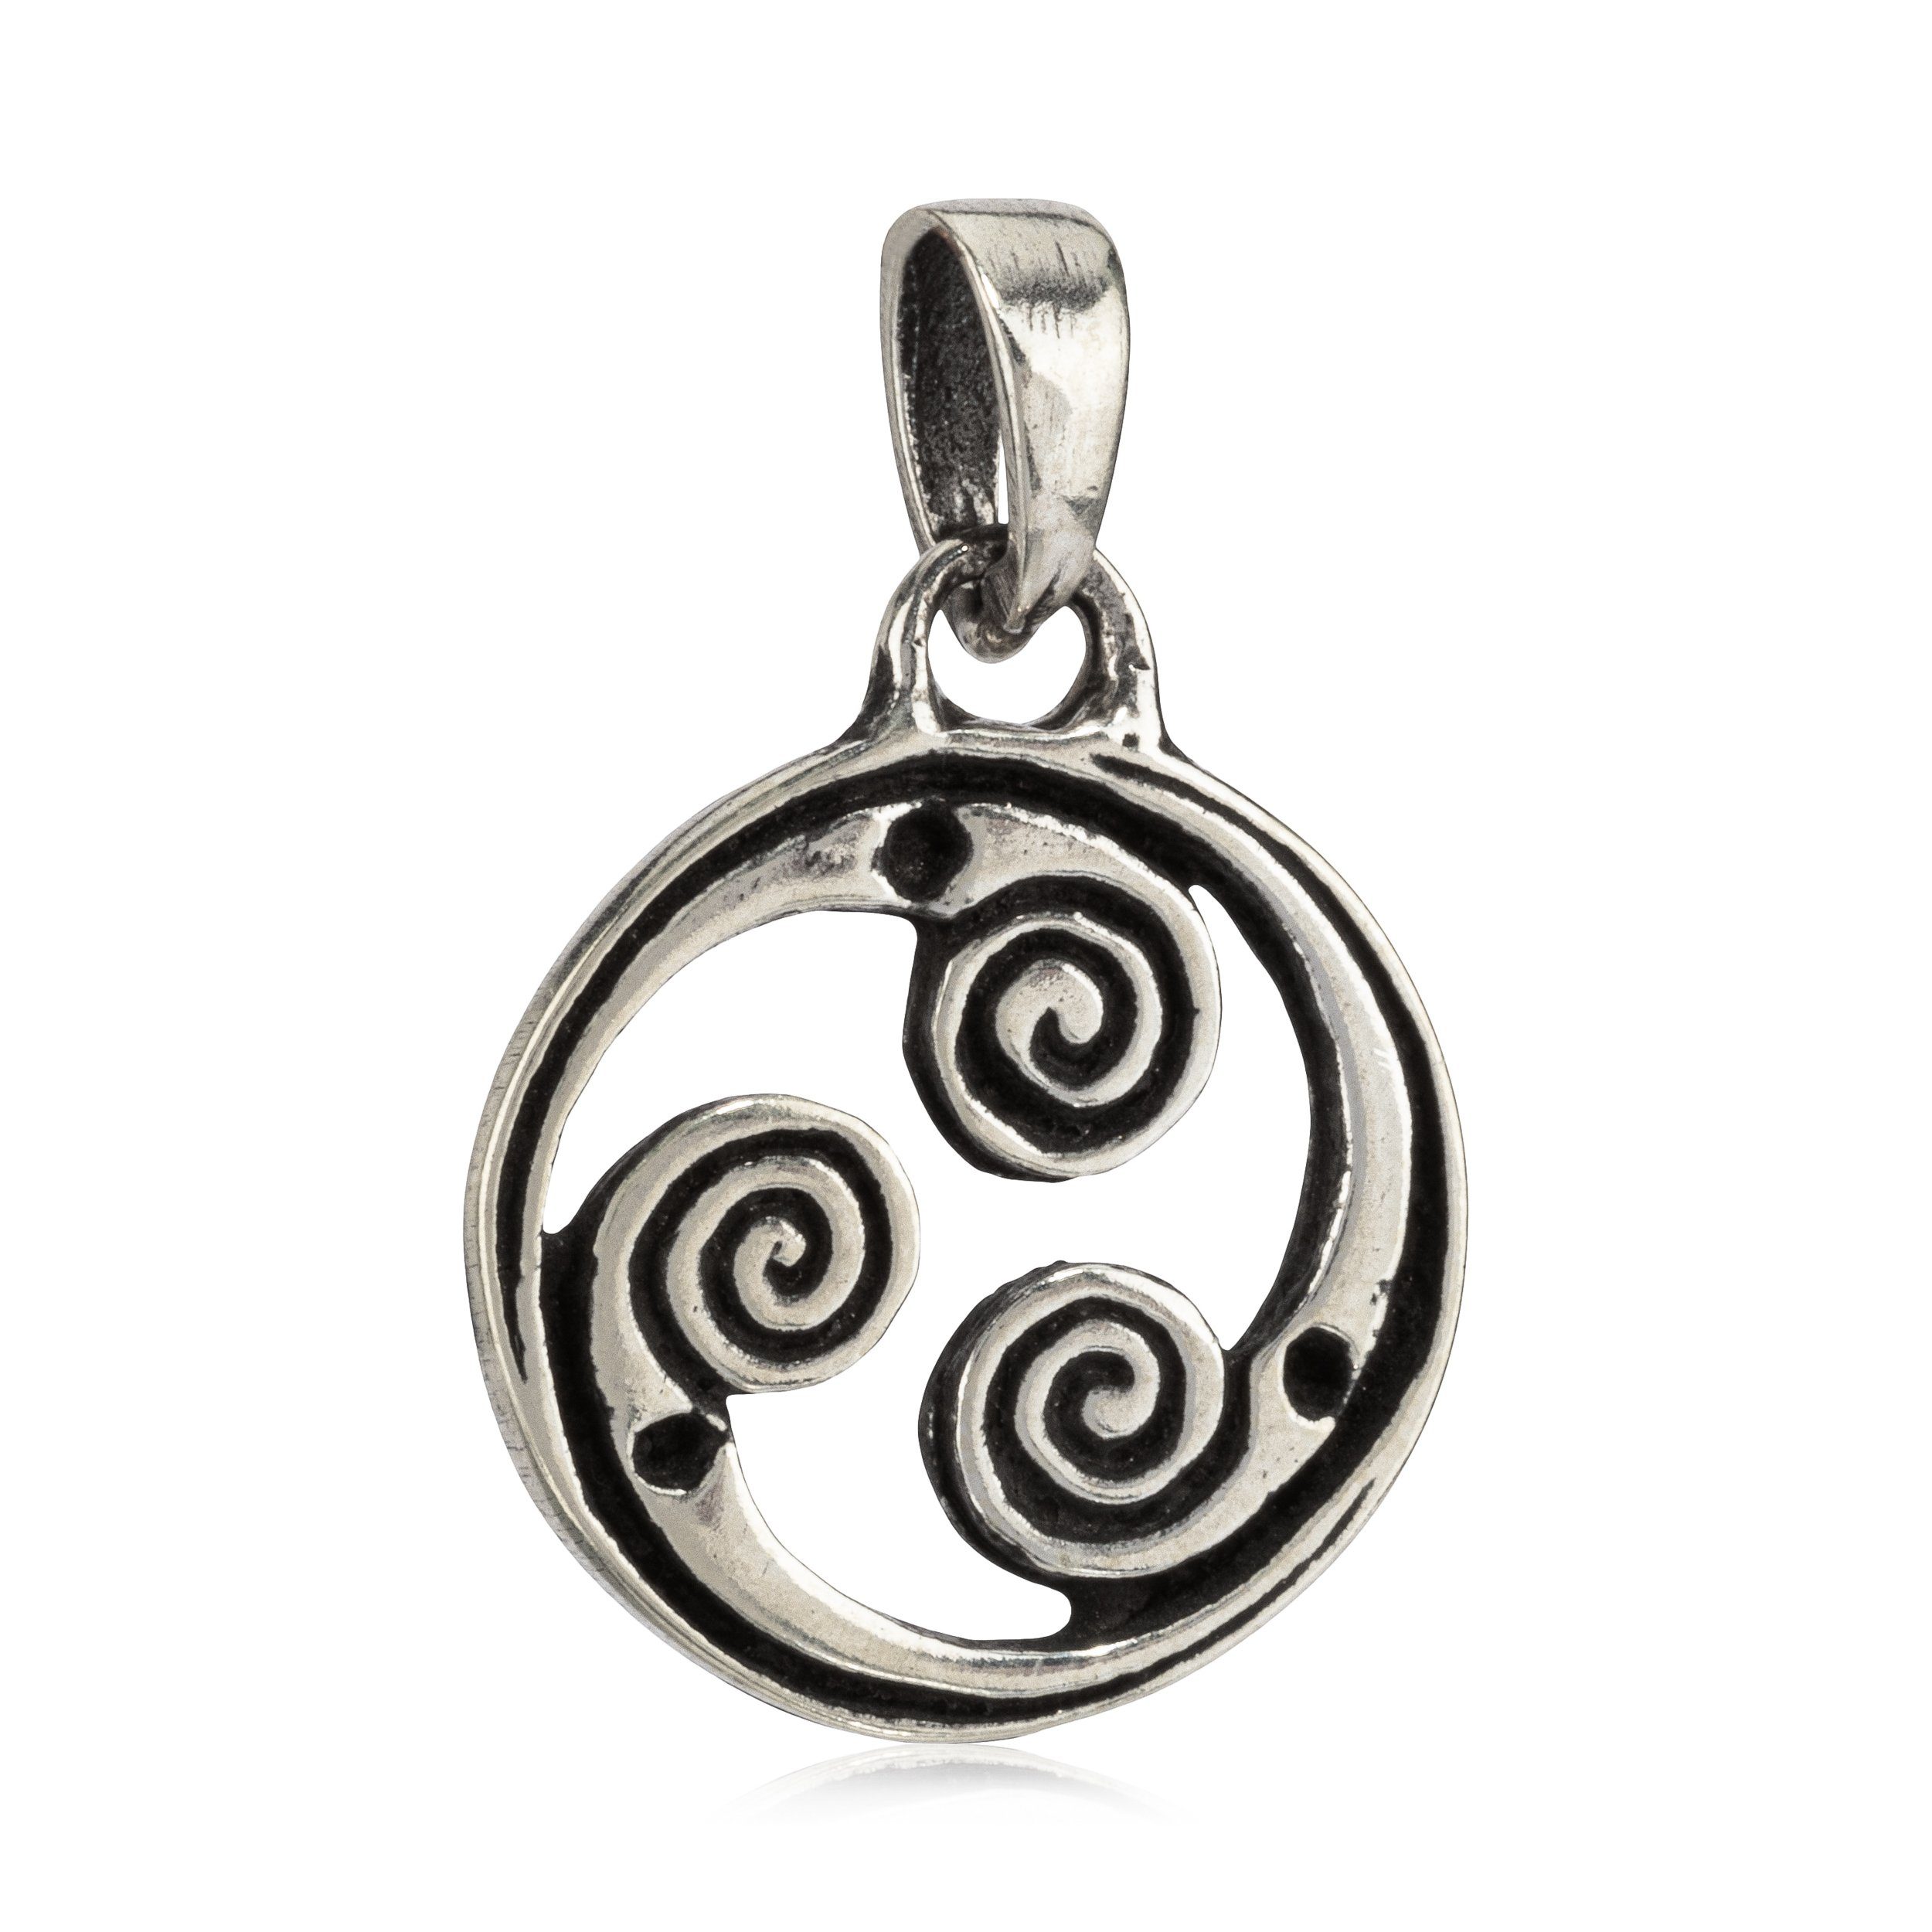 Silber 925 Sterling Silberschmuck Kettenanhänger Keltisches Silber NKlaus für Amulett Spiralrad Ket, 925 1,5cm Damen